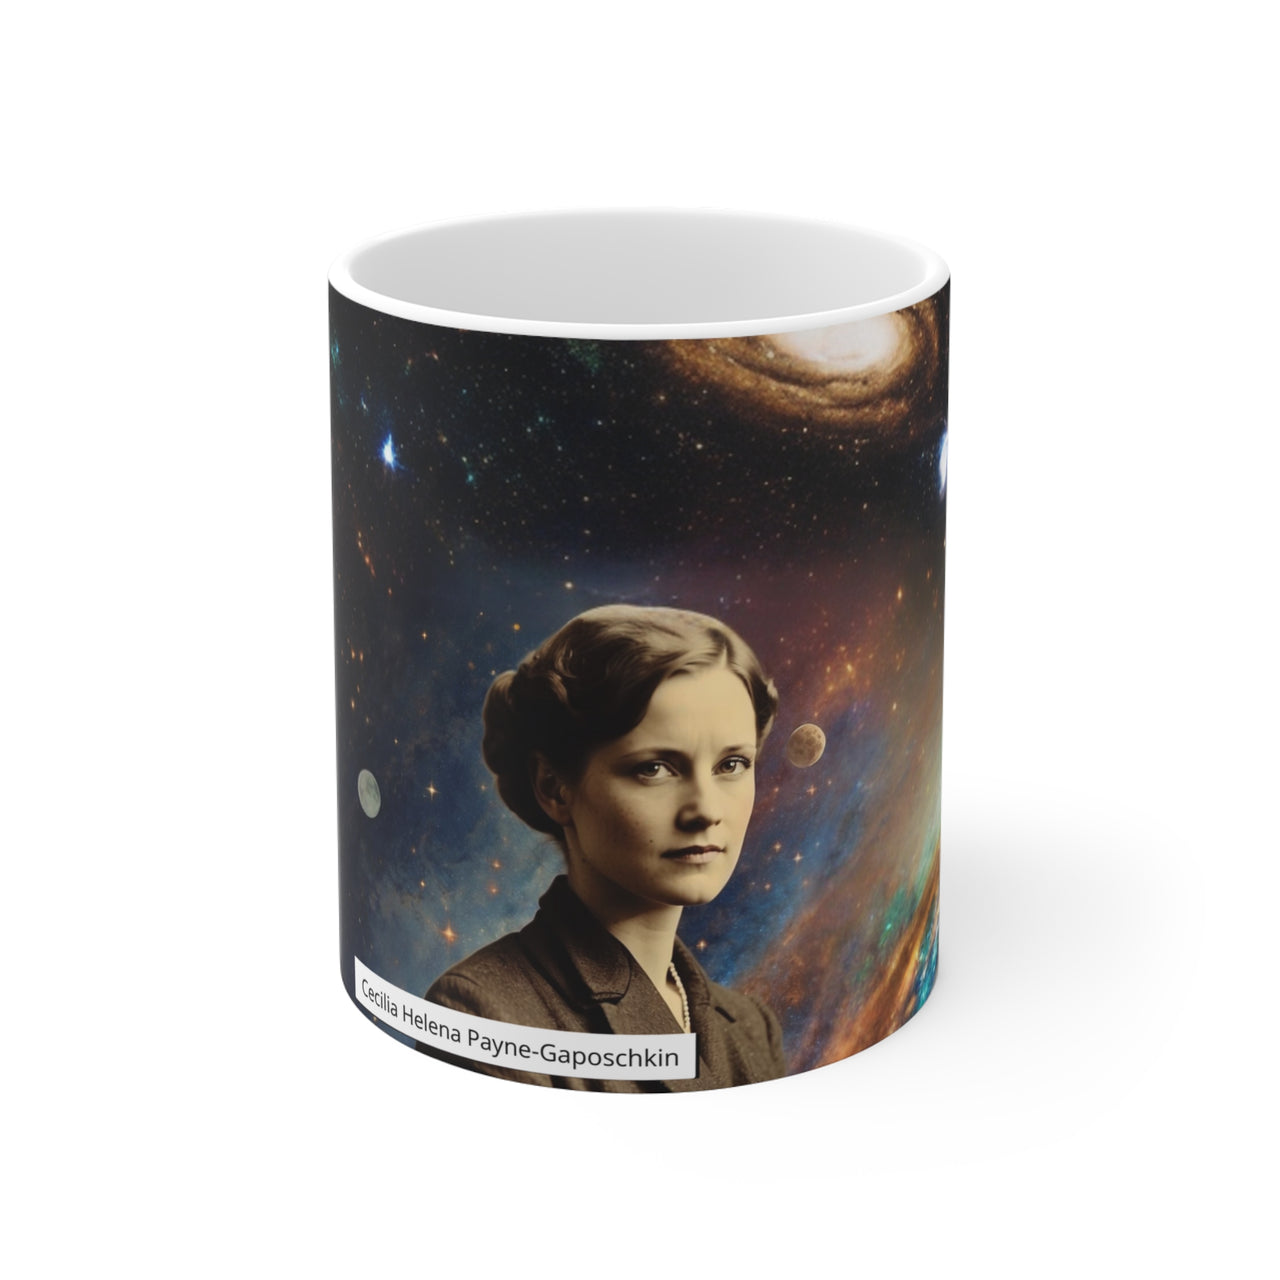 Taza de Cecilia Helena Payne-Gaposchkin, Taza de astronomía, Taza estelar